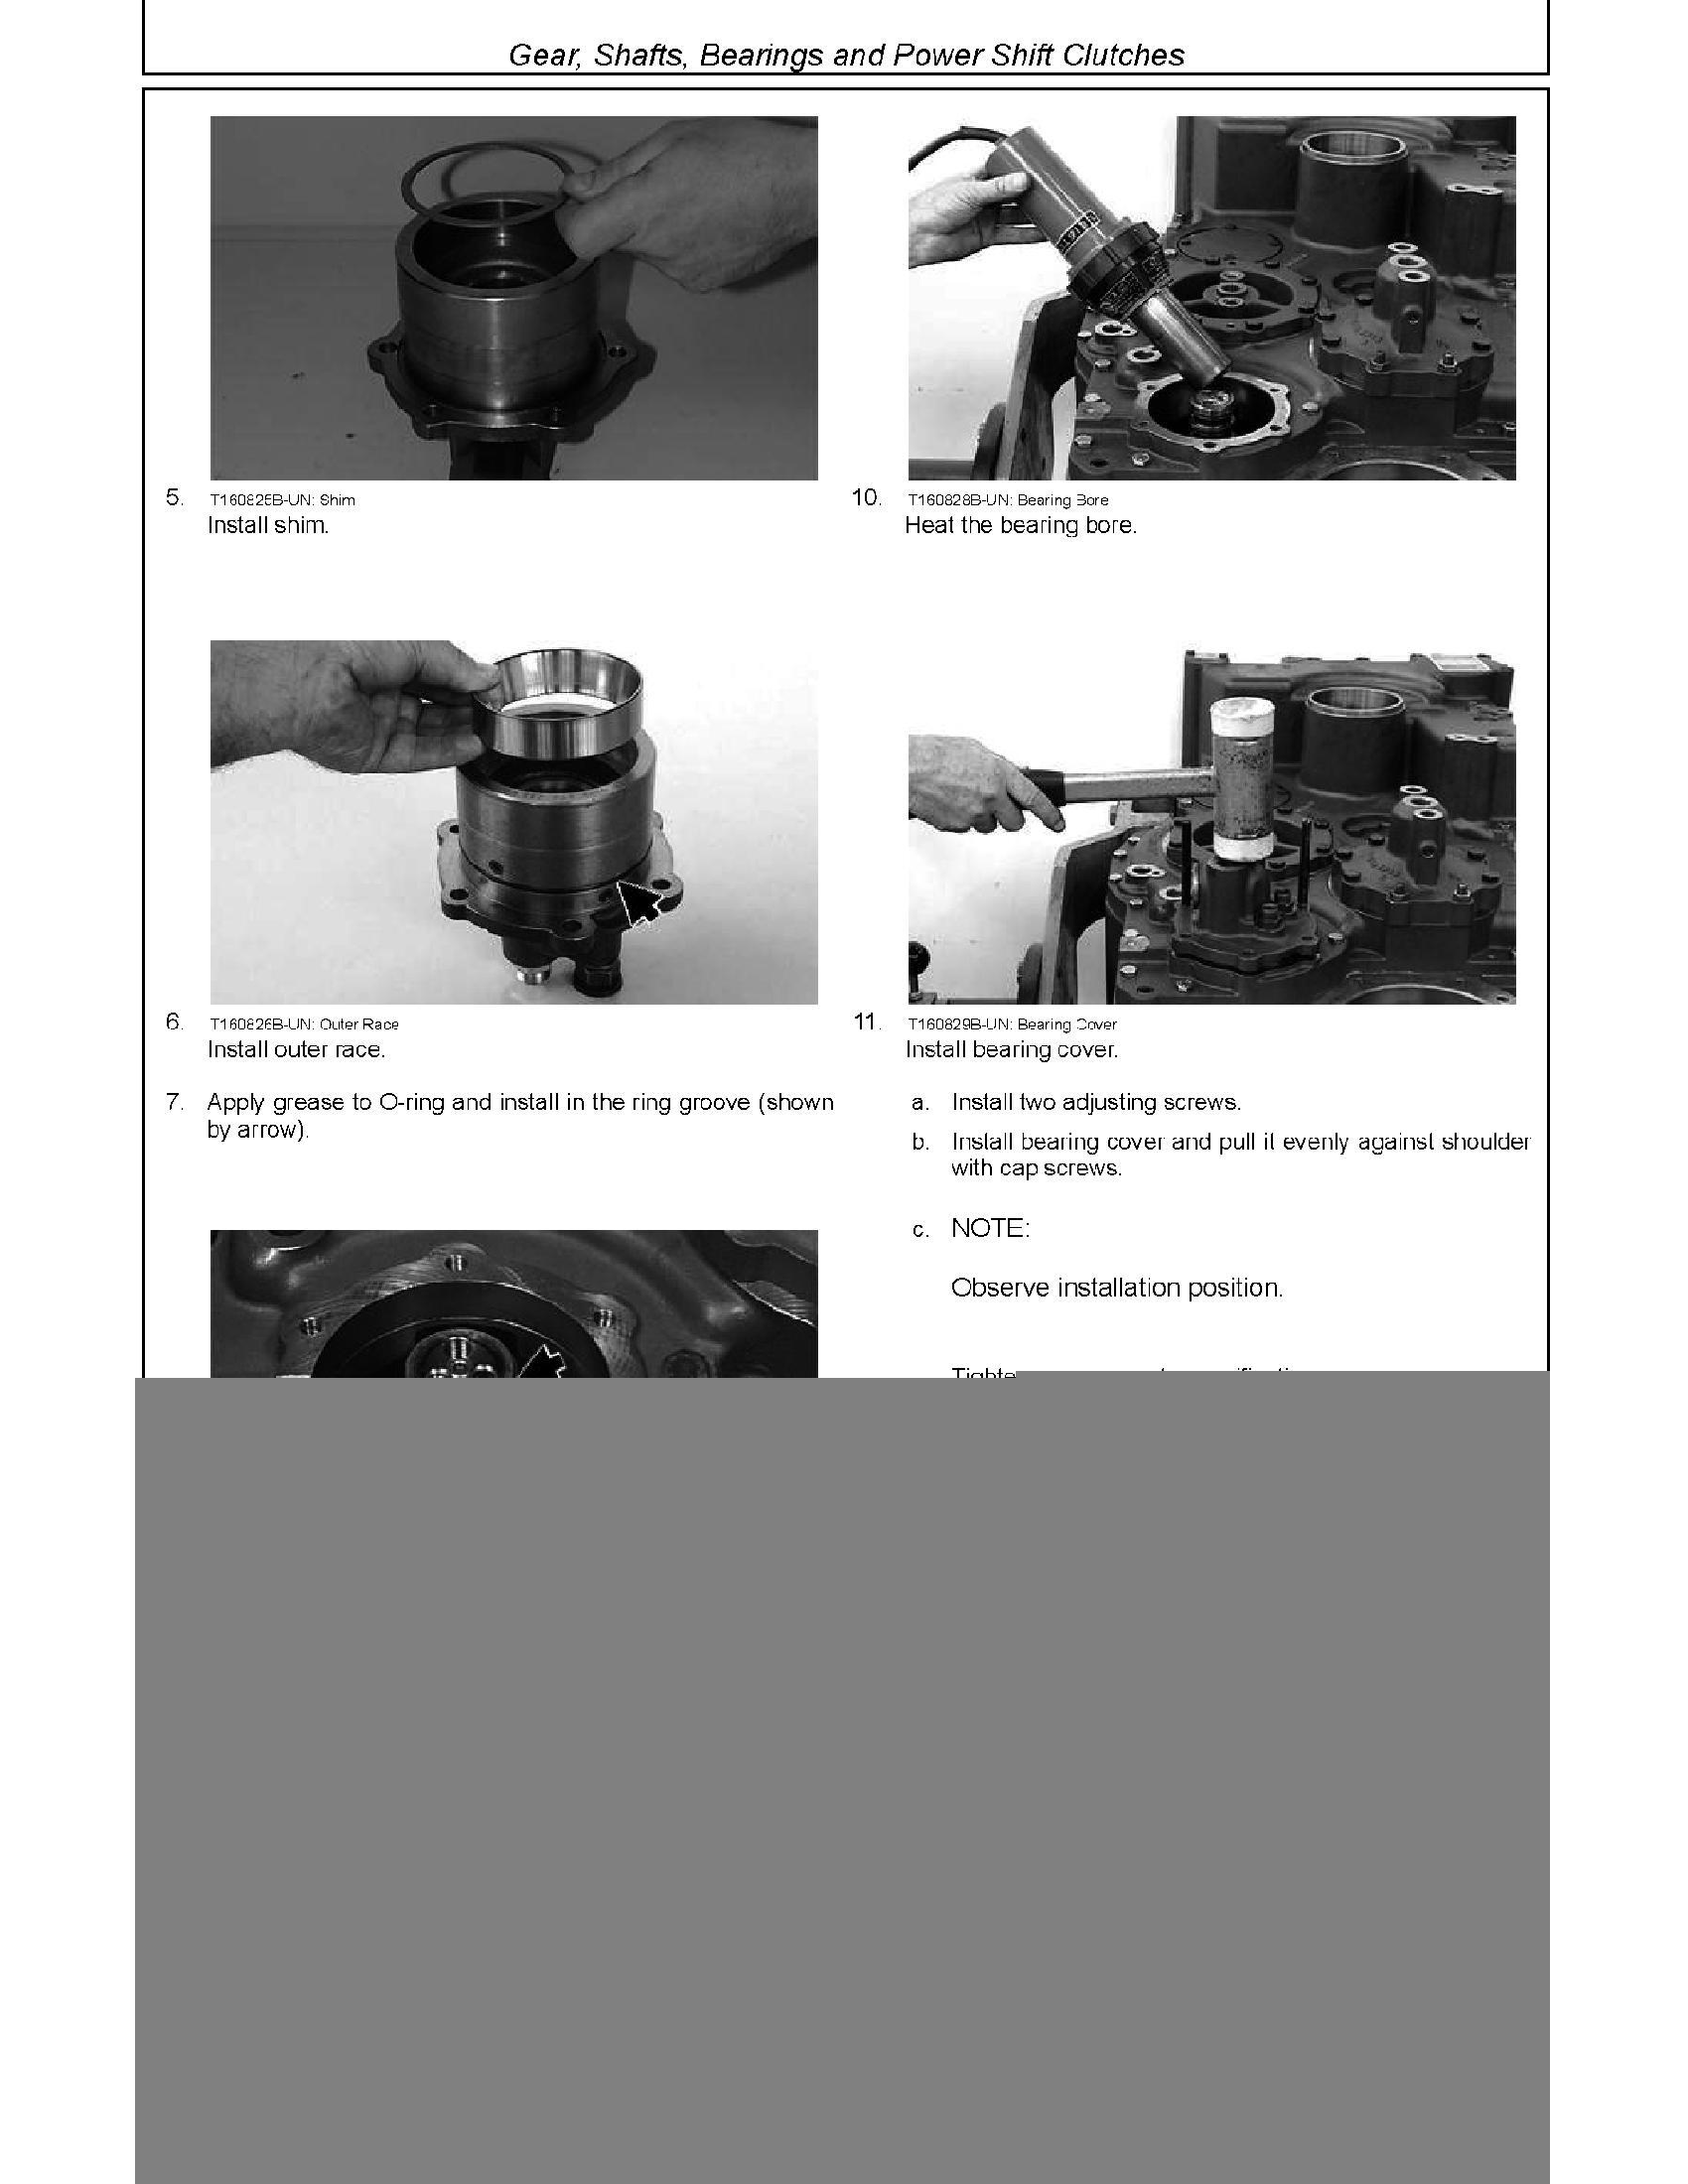 John Deere 7520 manual pdf